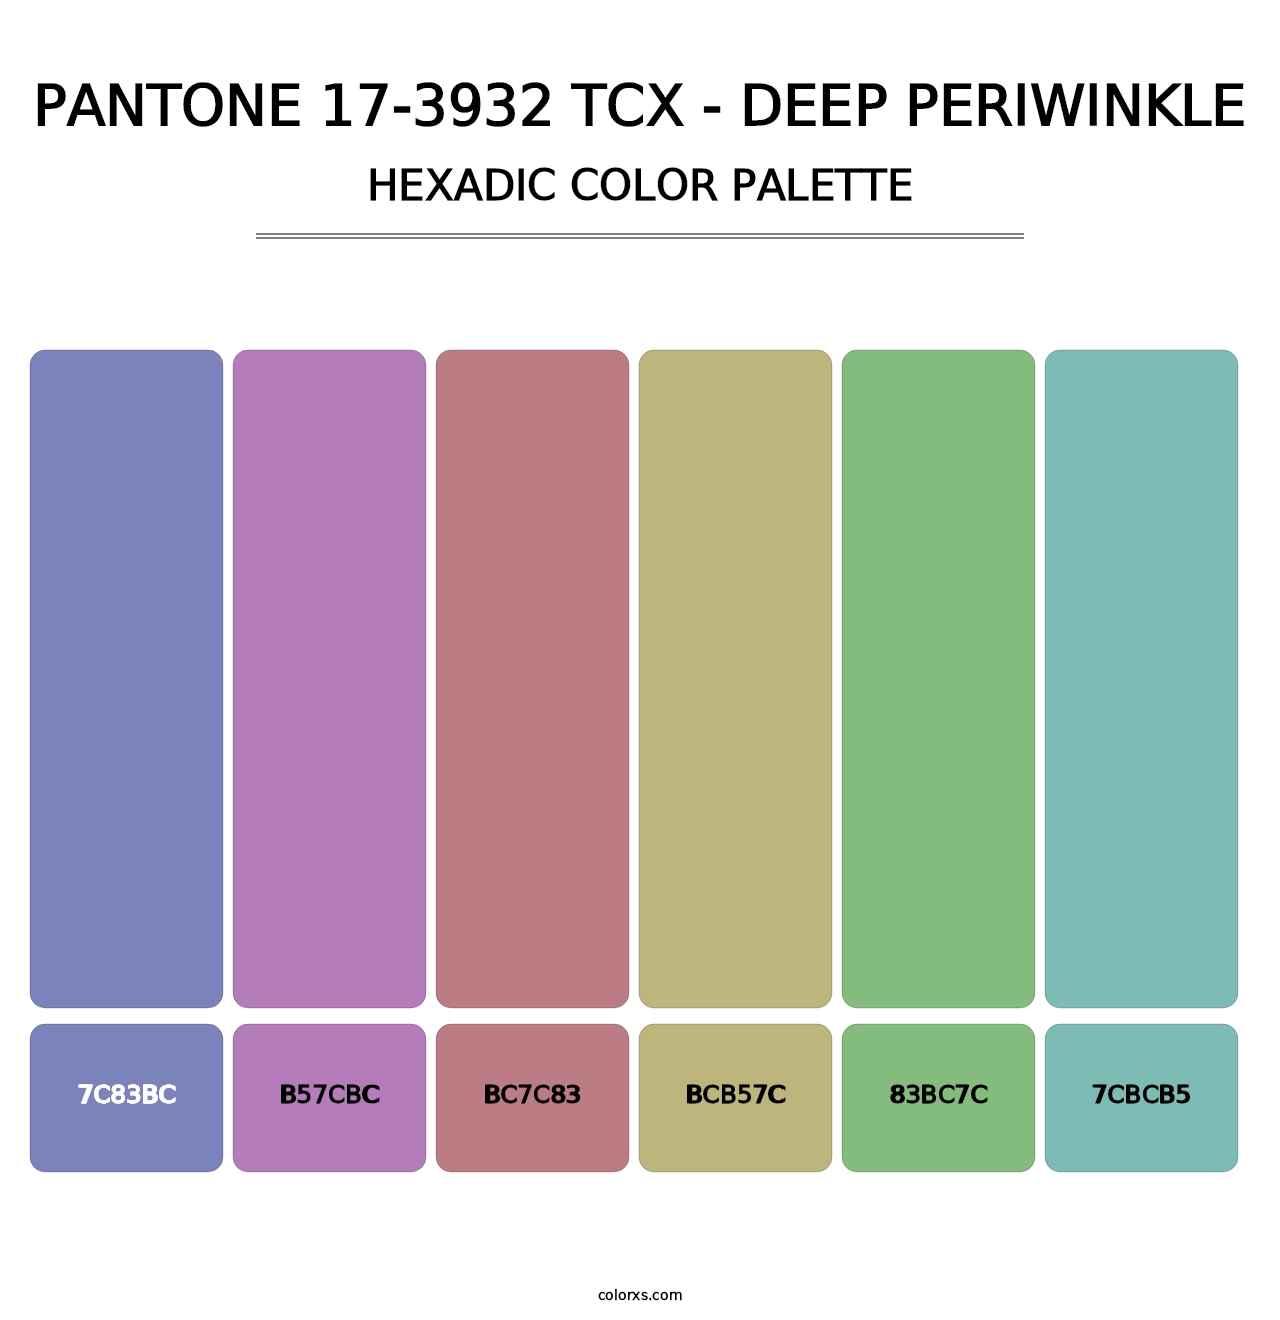 PANTONE 17-3932 TCX - Deep Periwinkle - Hexadic Color Palette